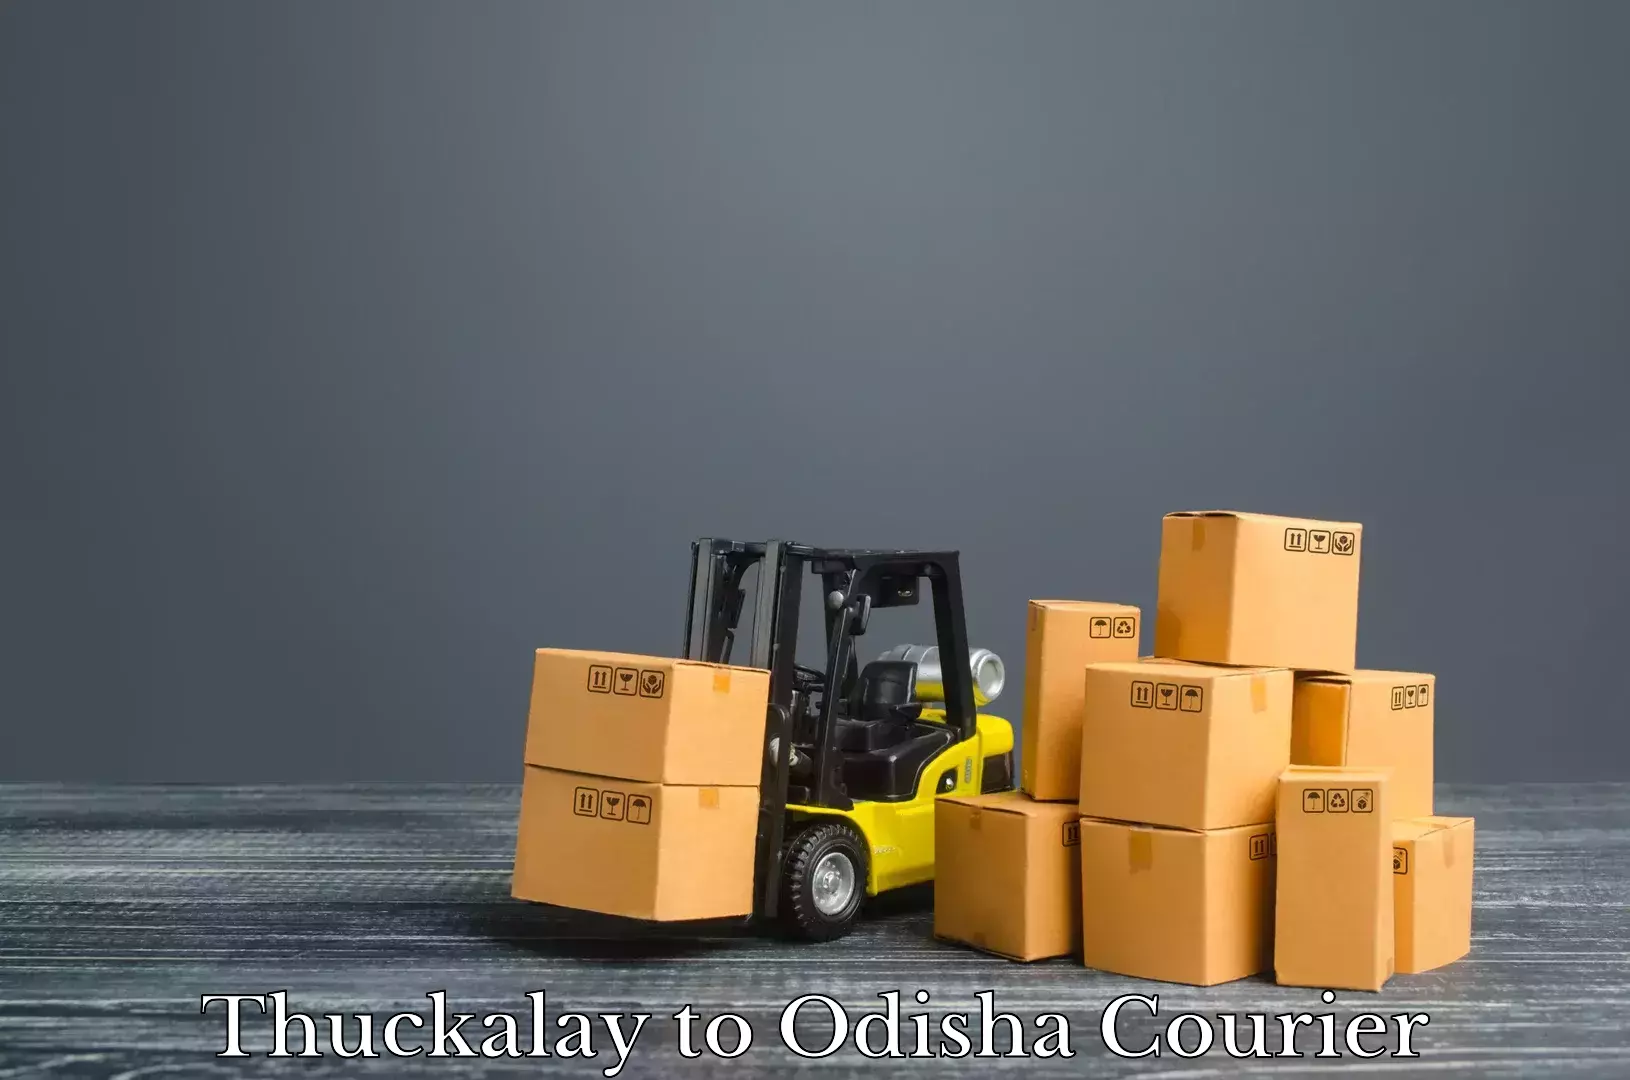 Luggage transport company Thuckalay to Telkoi